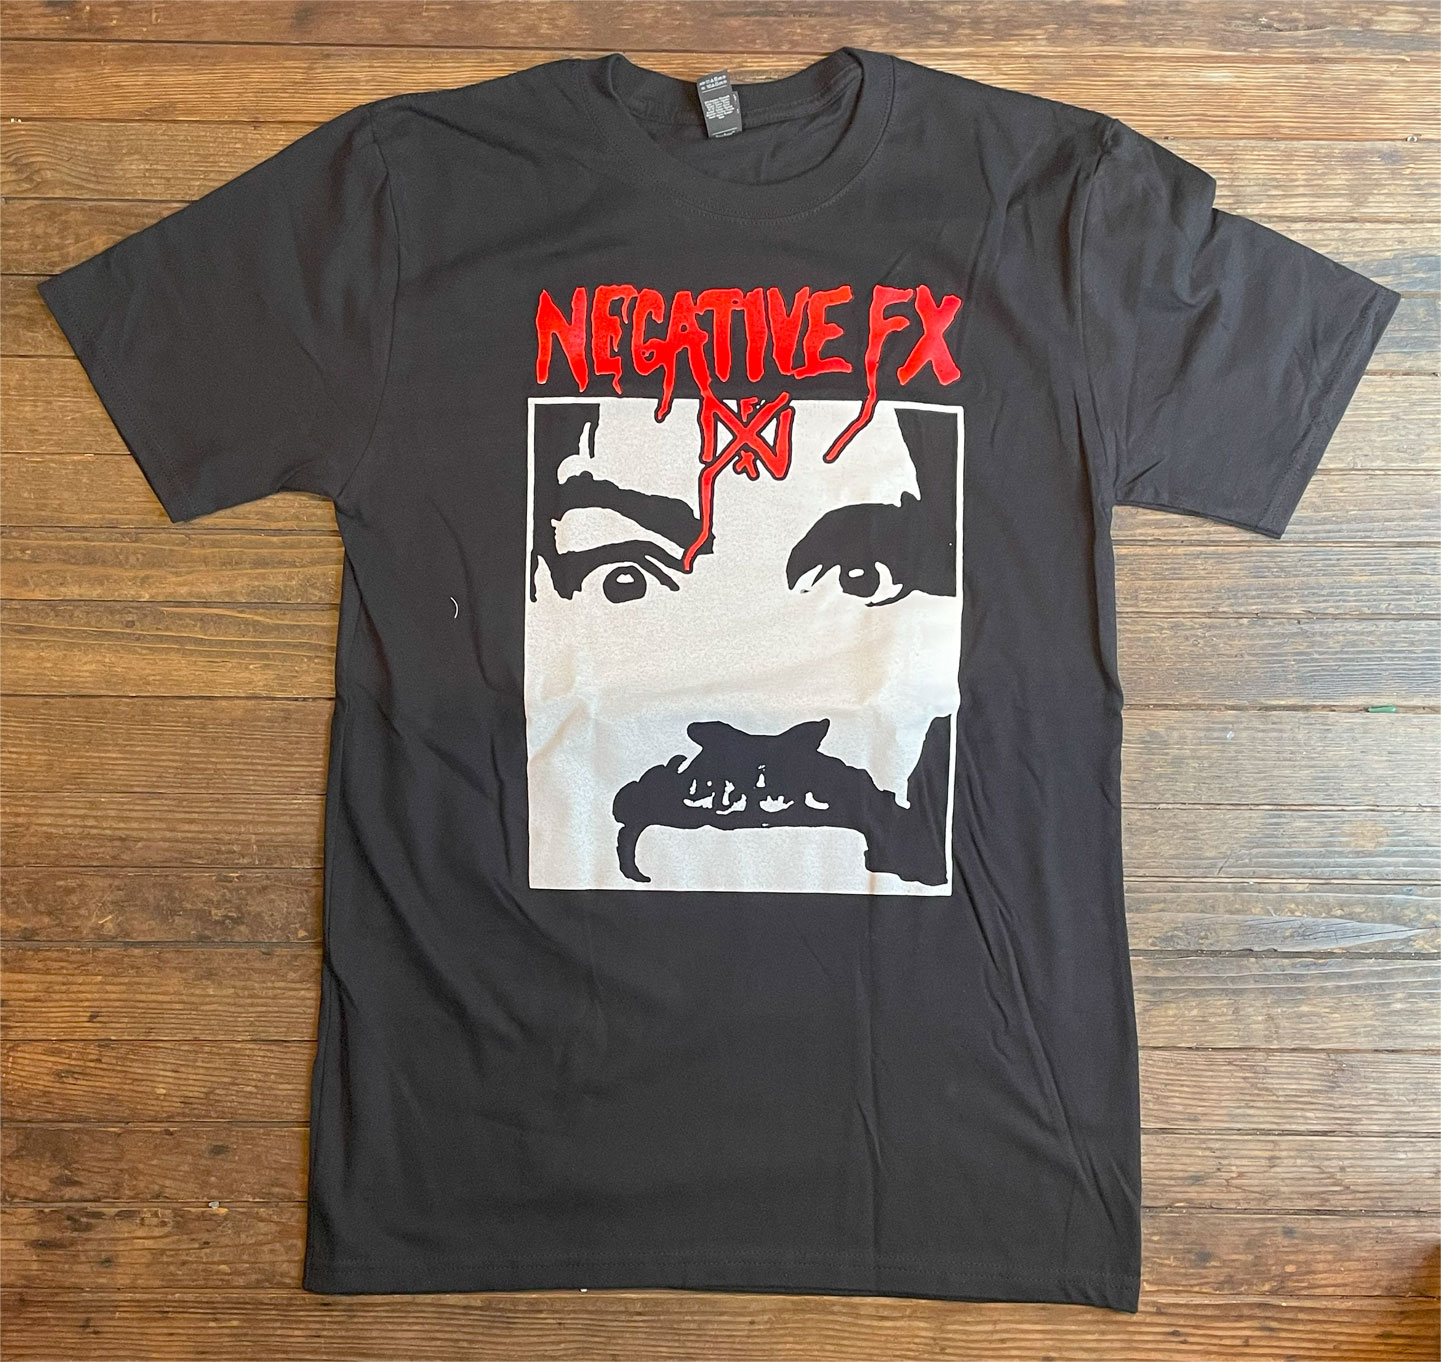 NEGATIVE FX Tシャツ BOSTON HARDCORE